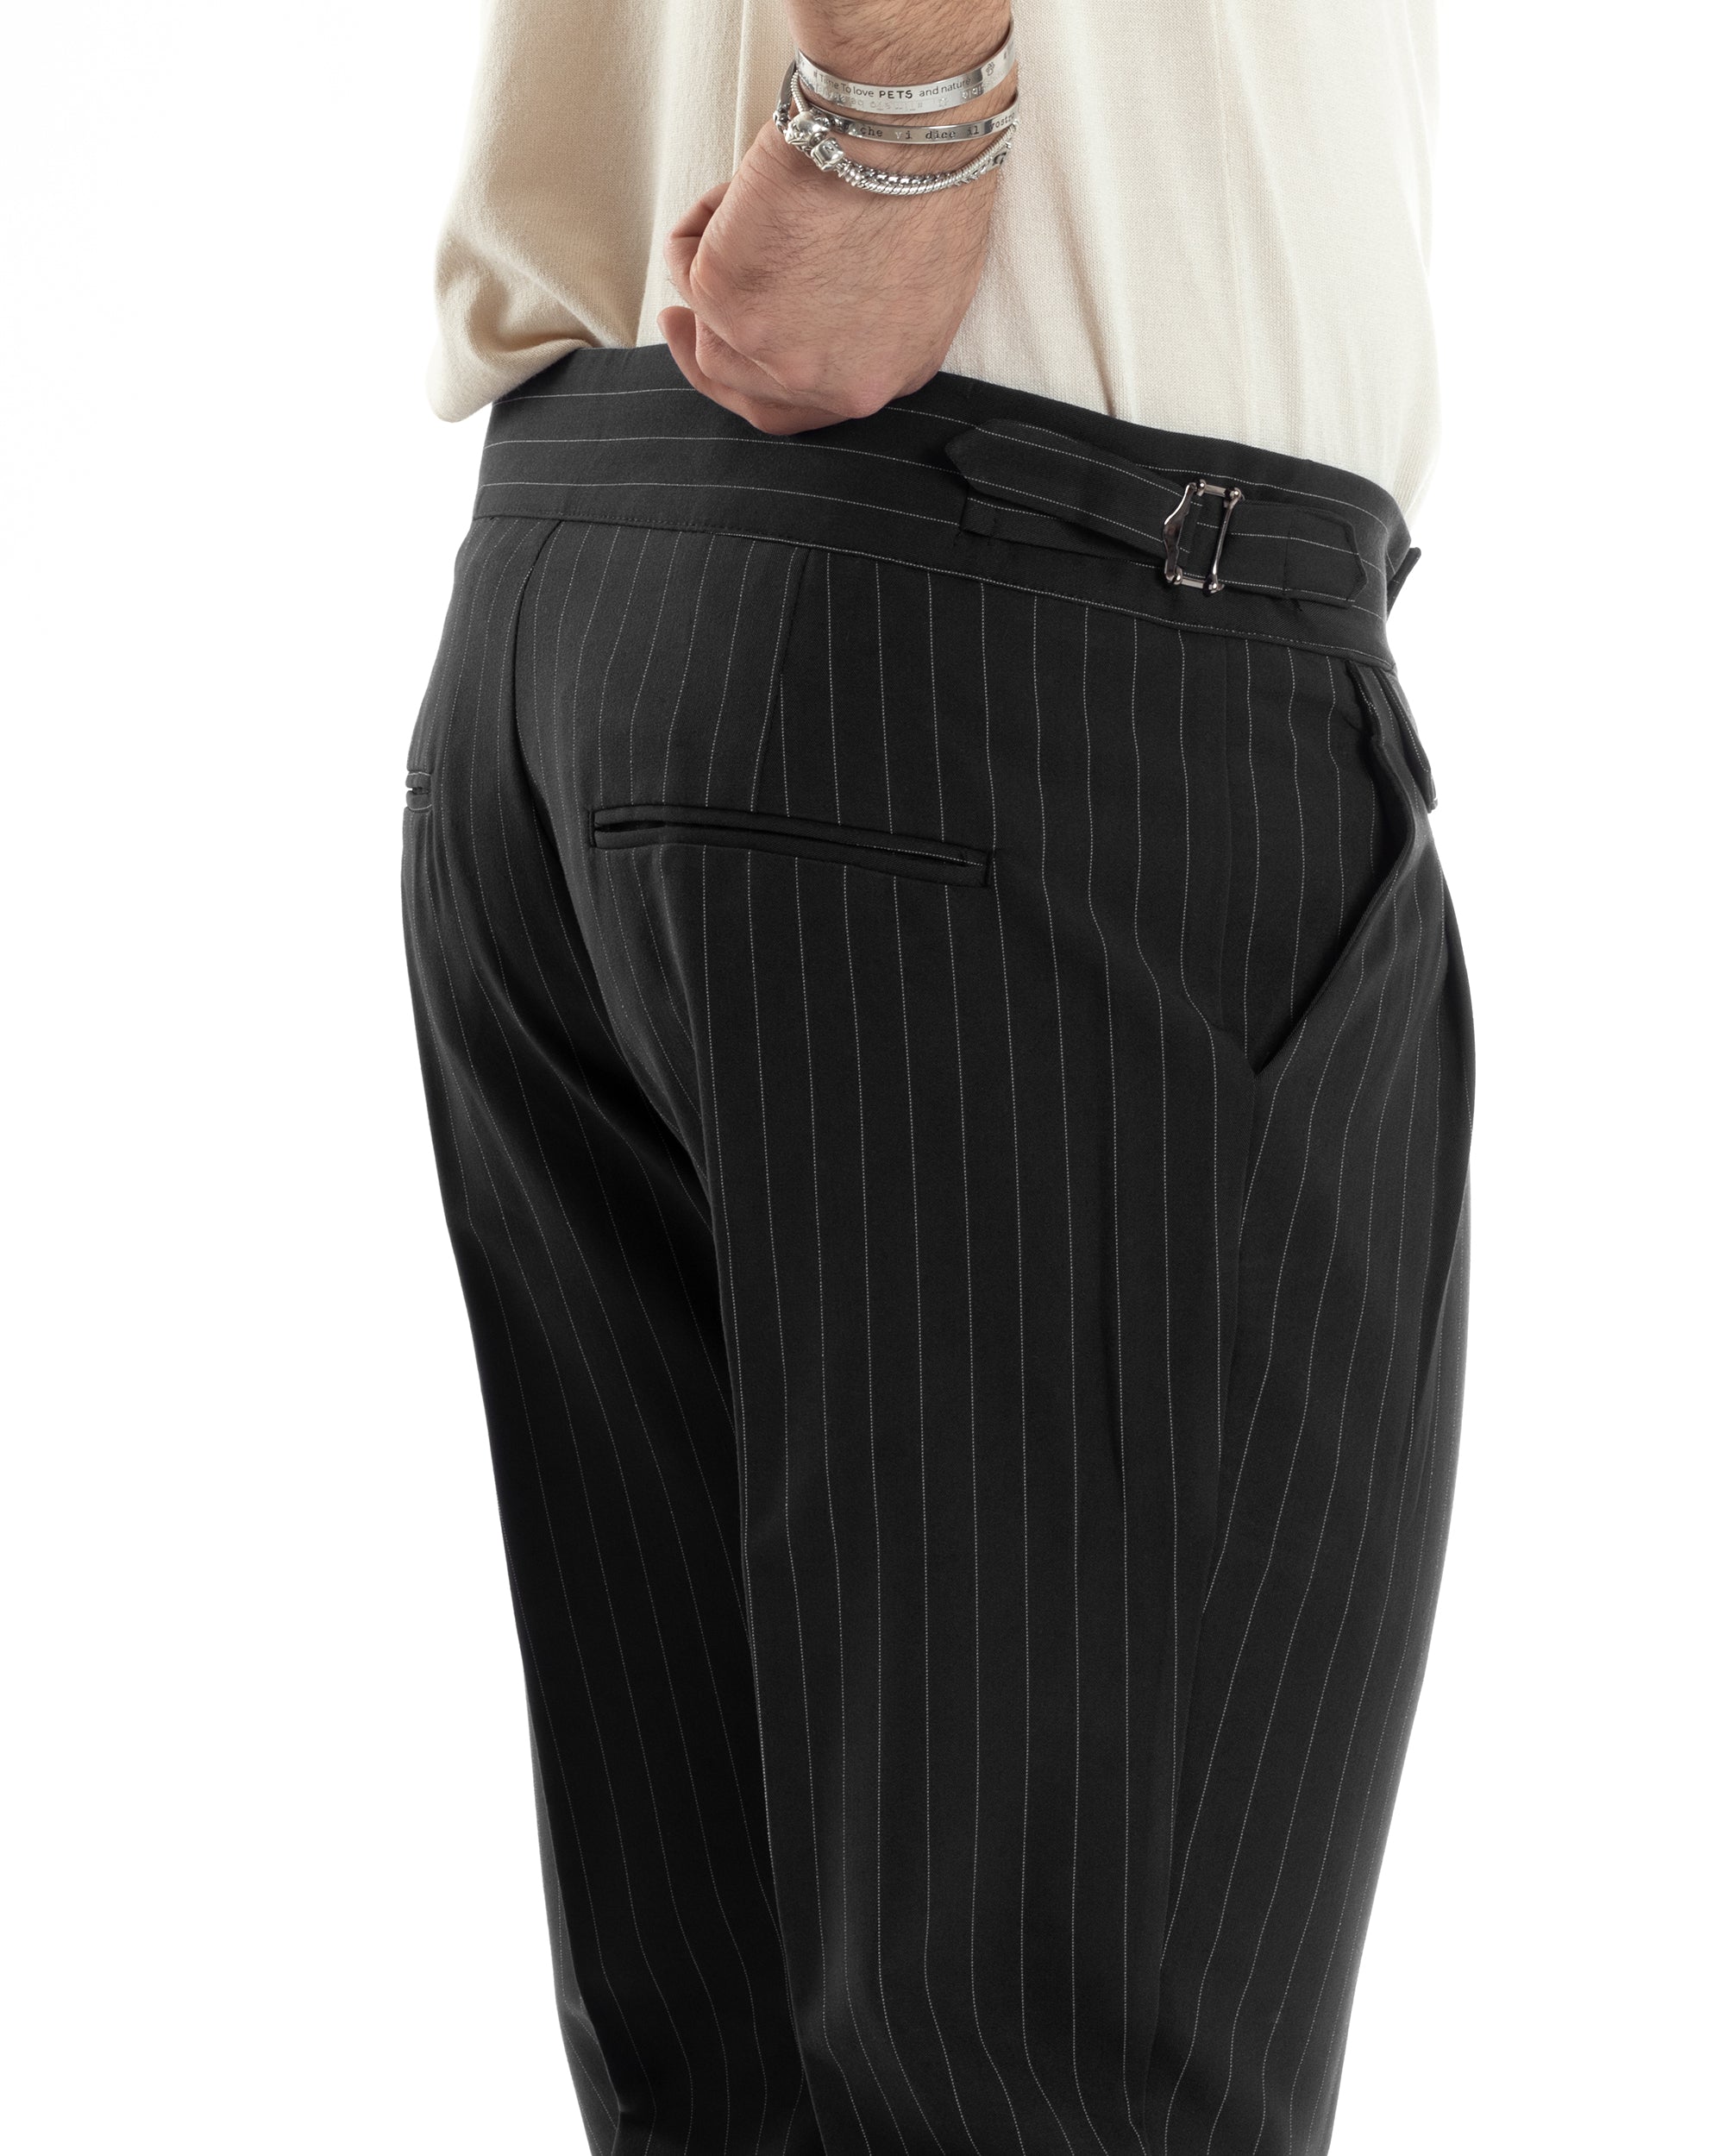 Pantaloni Uomo Classico Gessato Rigato Vita Alta Pinces Abbottonatura Allungata Fibbia Casual Nero GIOSAL-P6086A